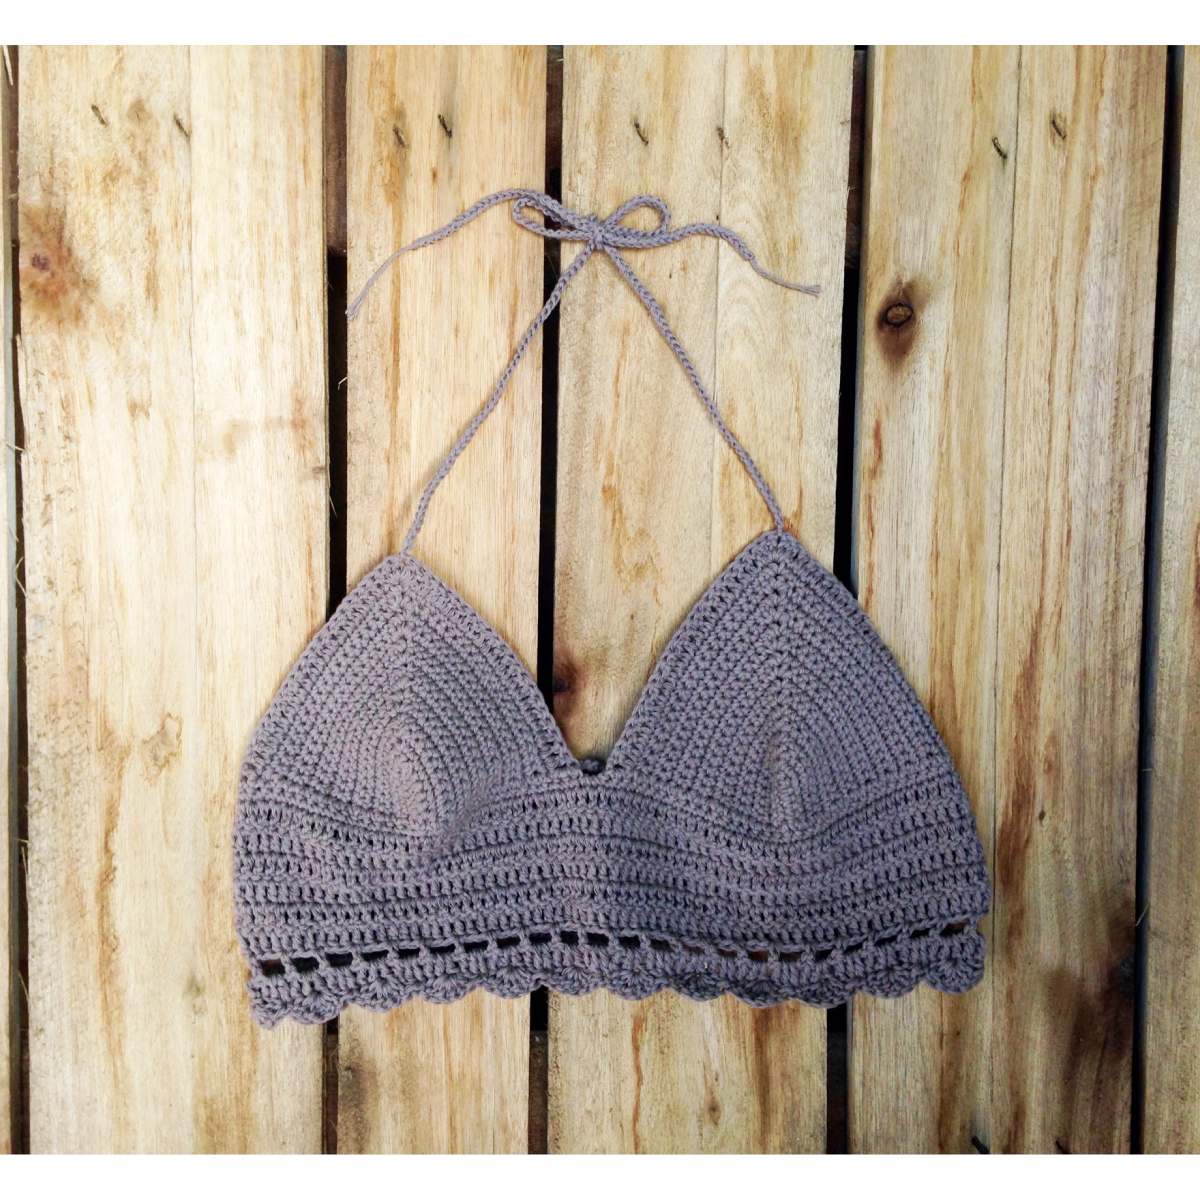 Imagenes de bikinis tejidas al crochet